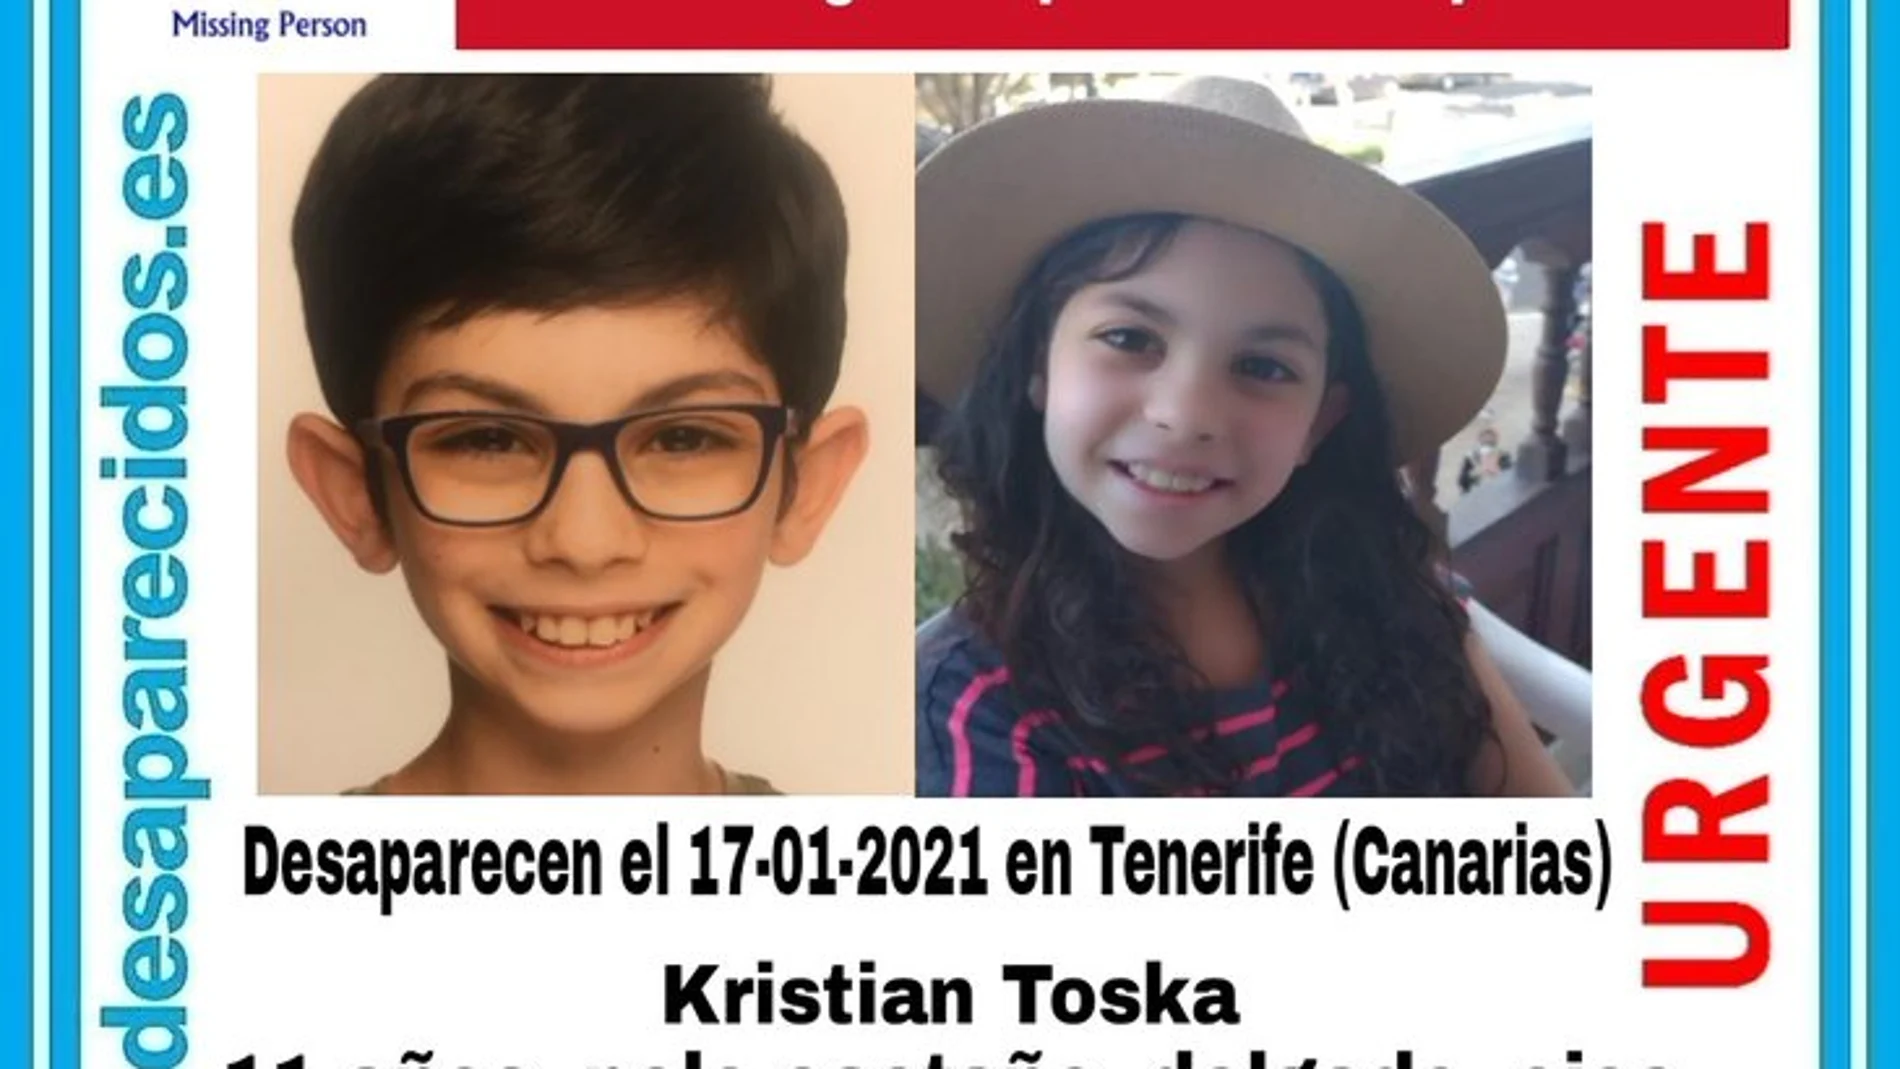 Buscan en Tenerife a dos hermanos presuntamente secuestrados por su padre en Alemania